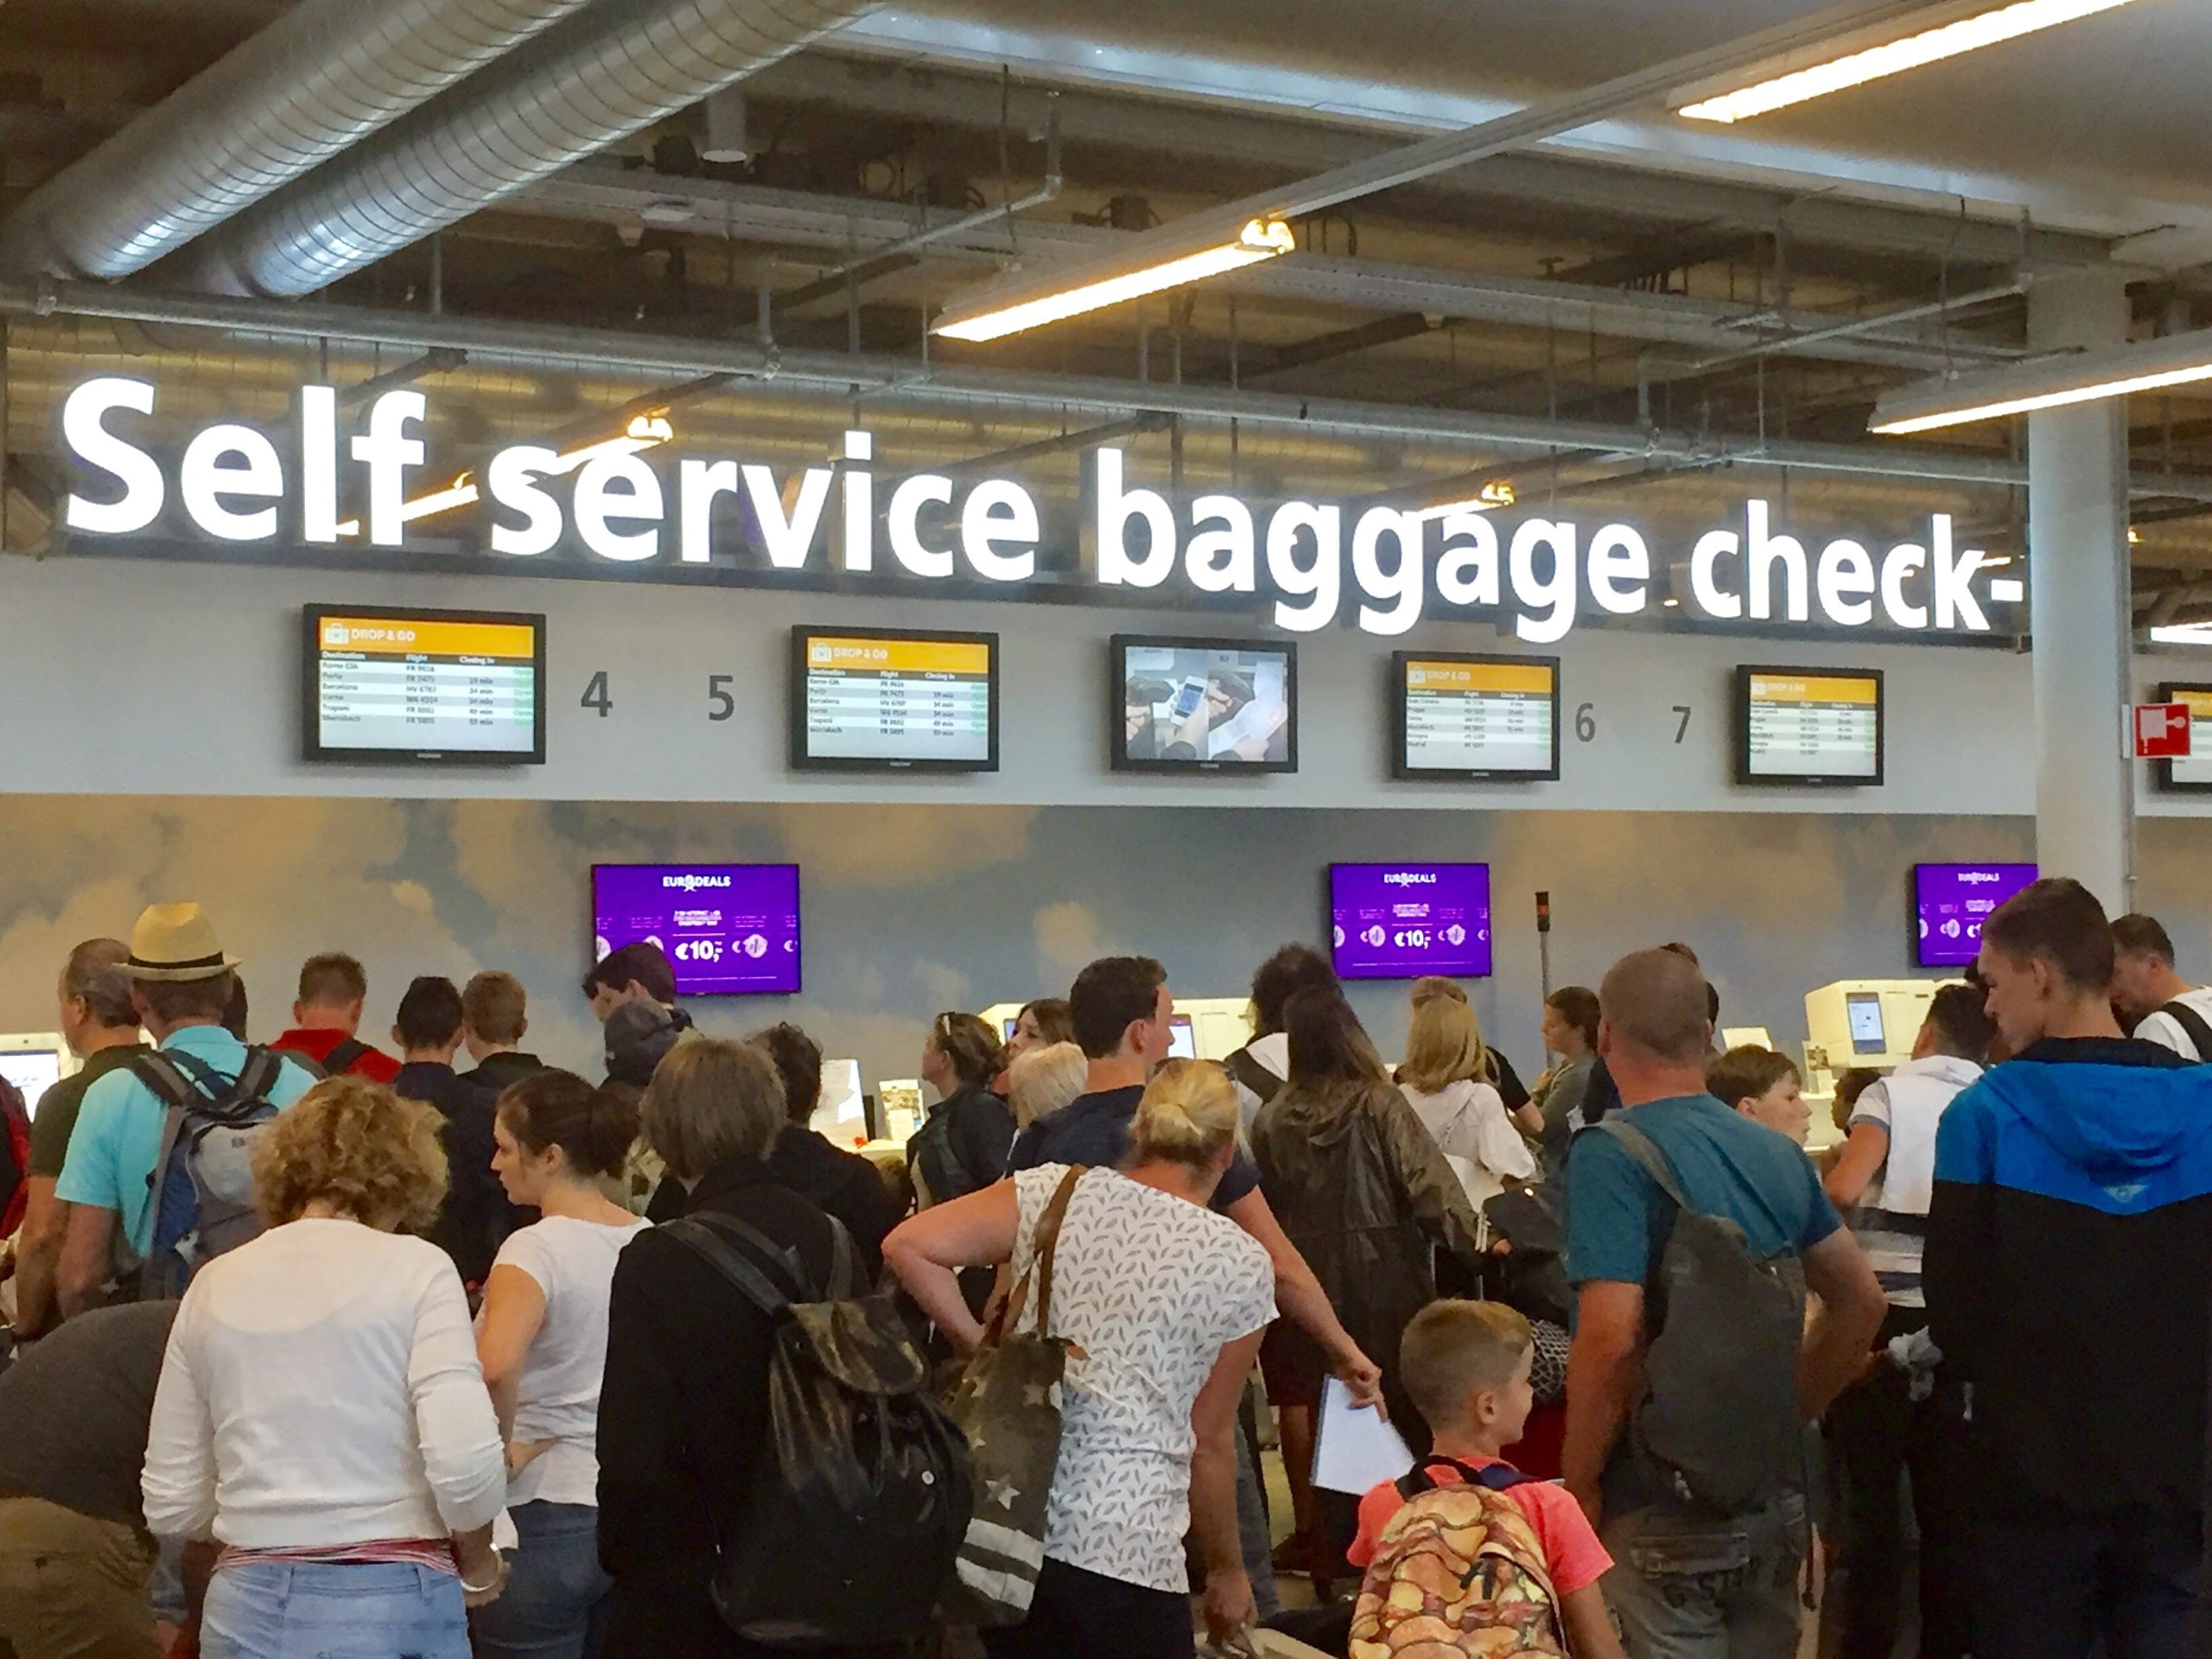 Vârfurile de pasageri pe aeroportul Eindhoven: un an de creștere fără precedent